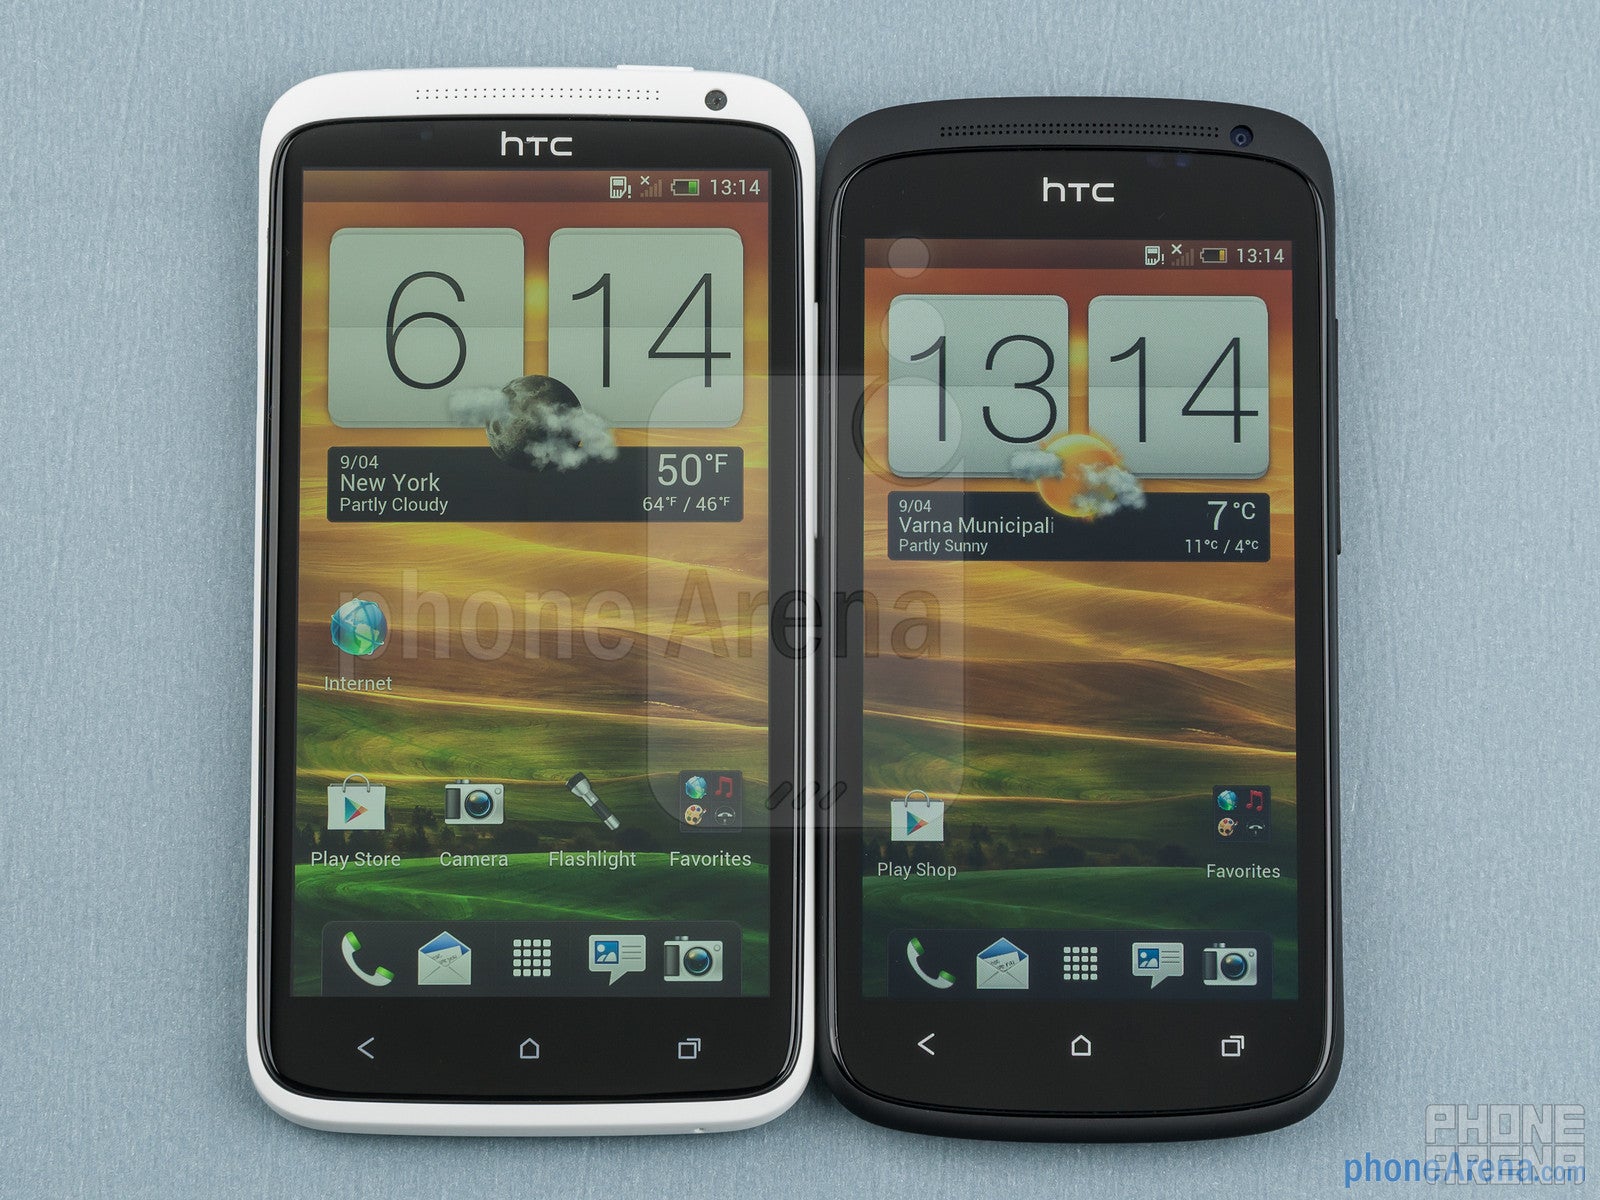 HTC One X vs HTC One S